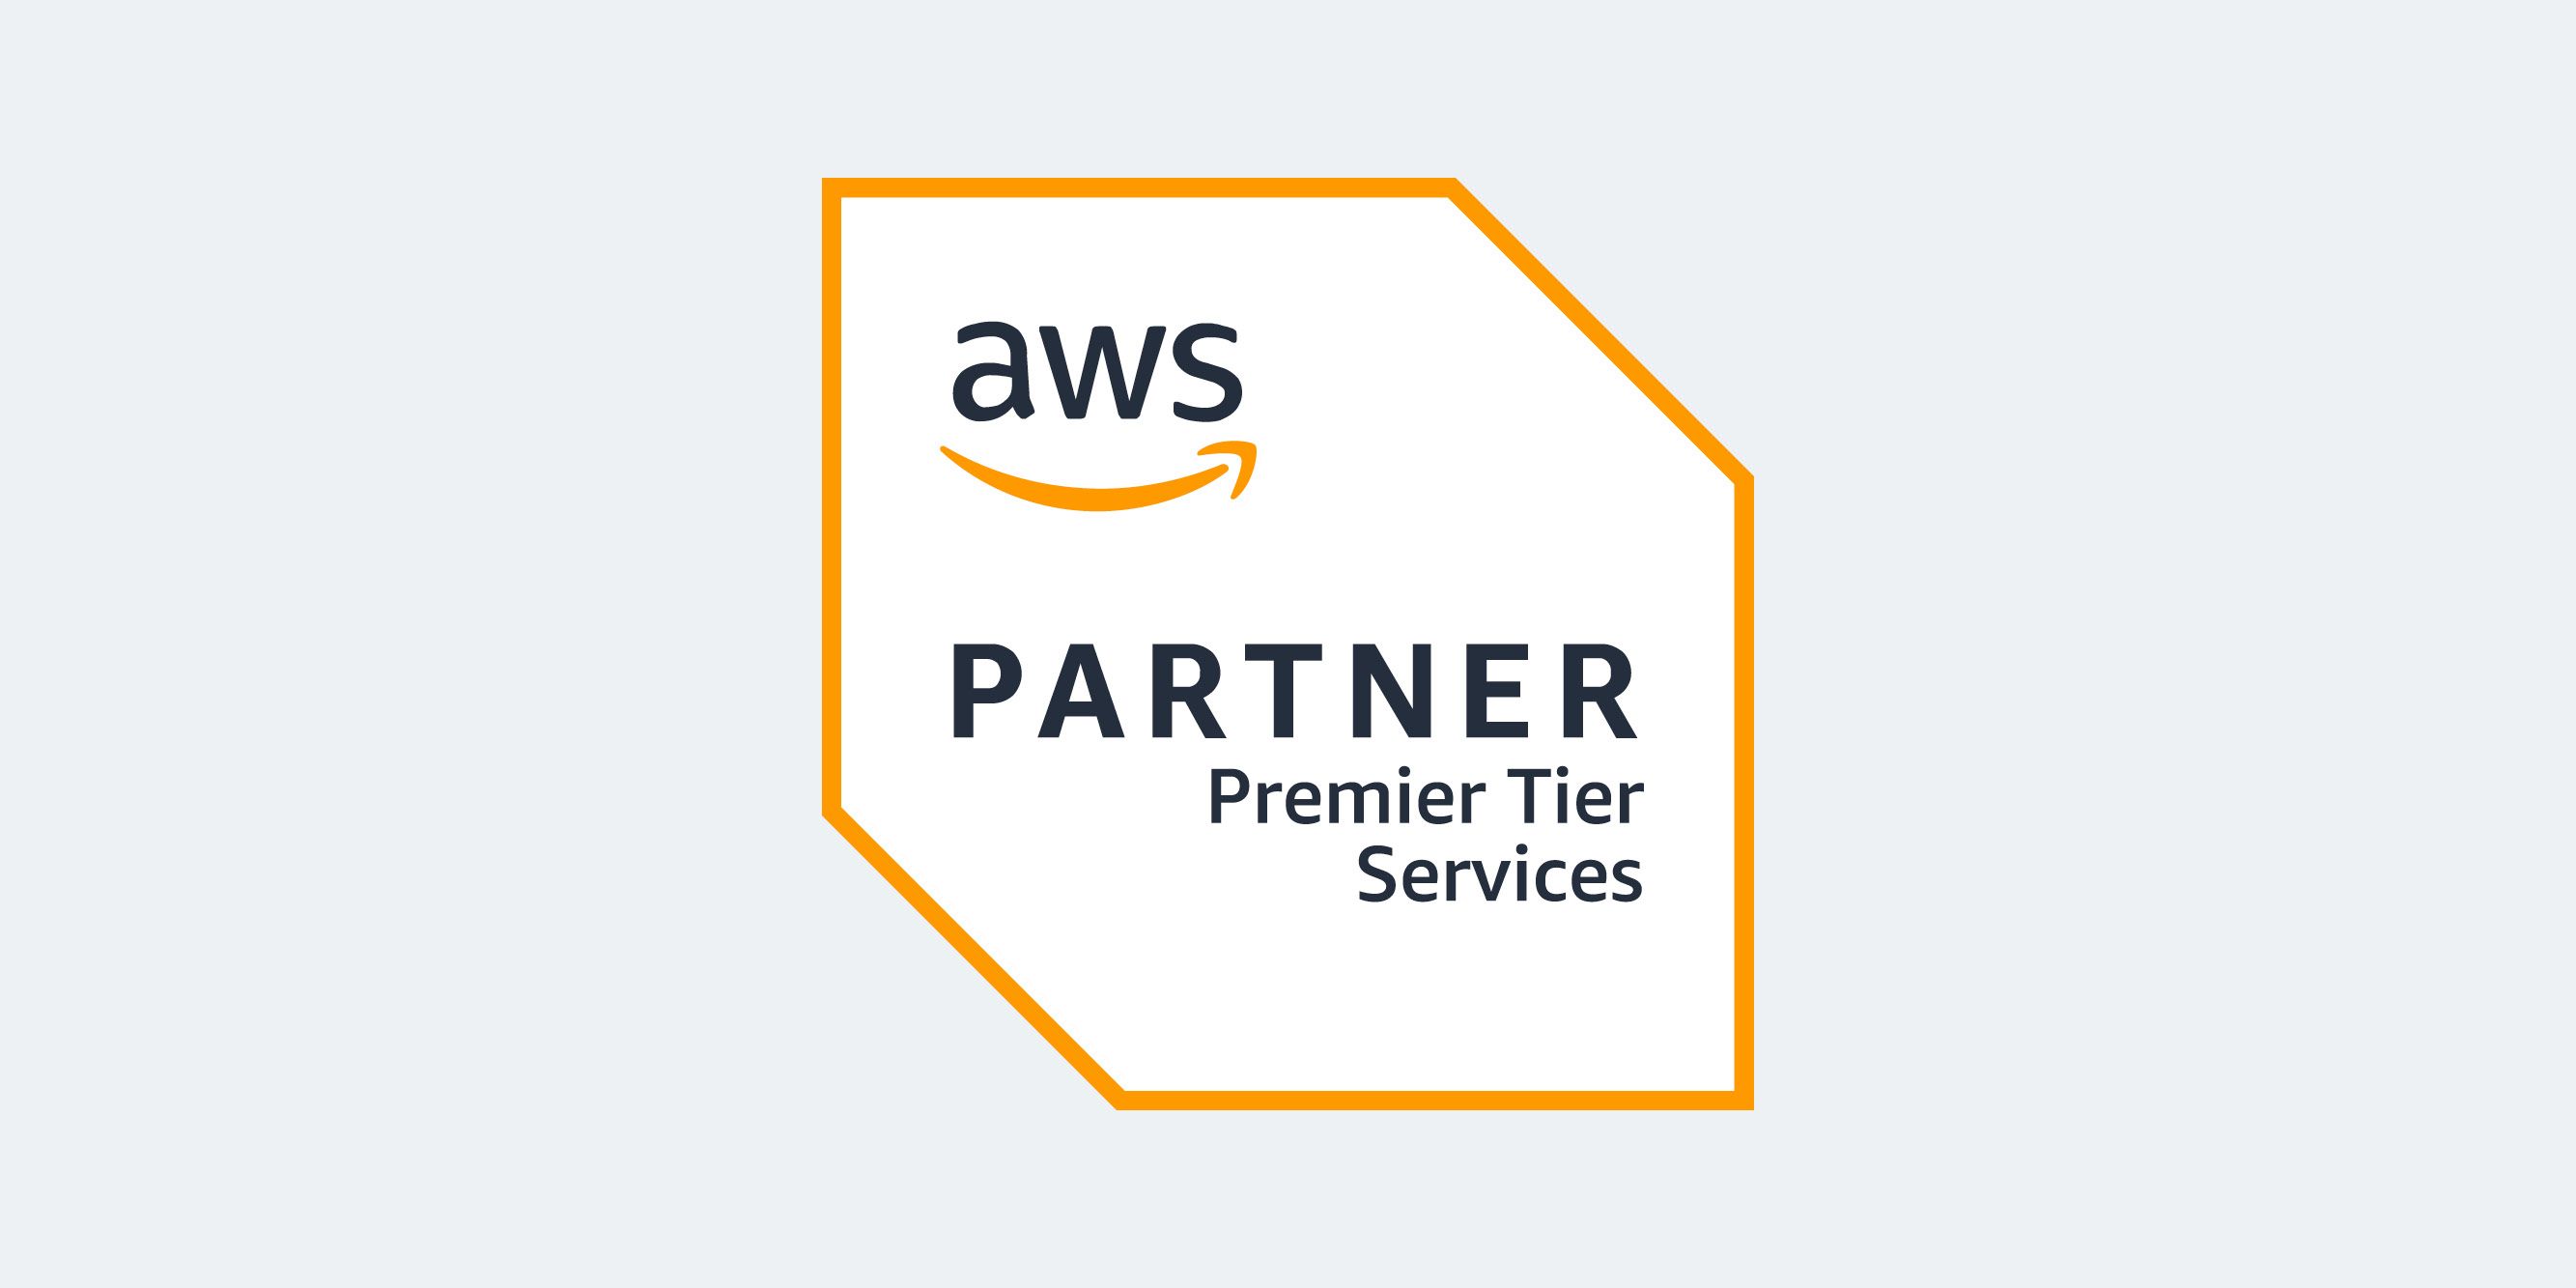 AWS Premier Tier Services partner